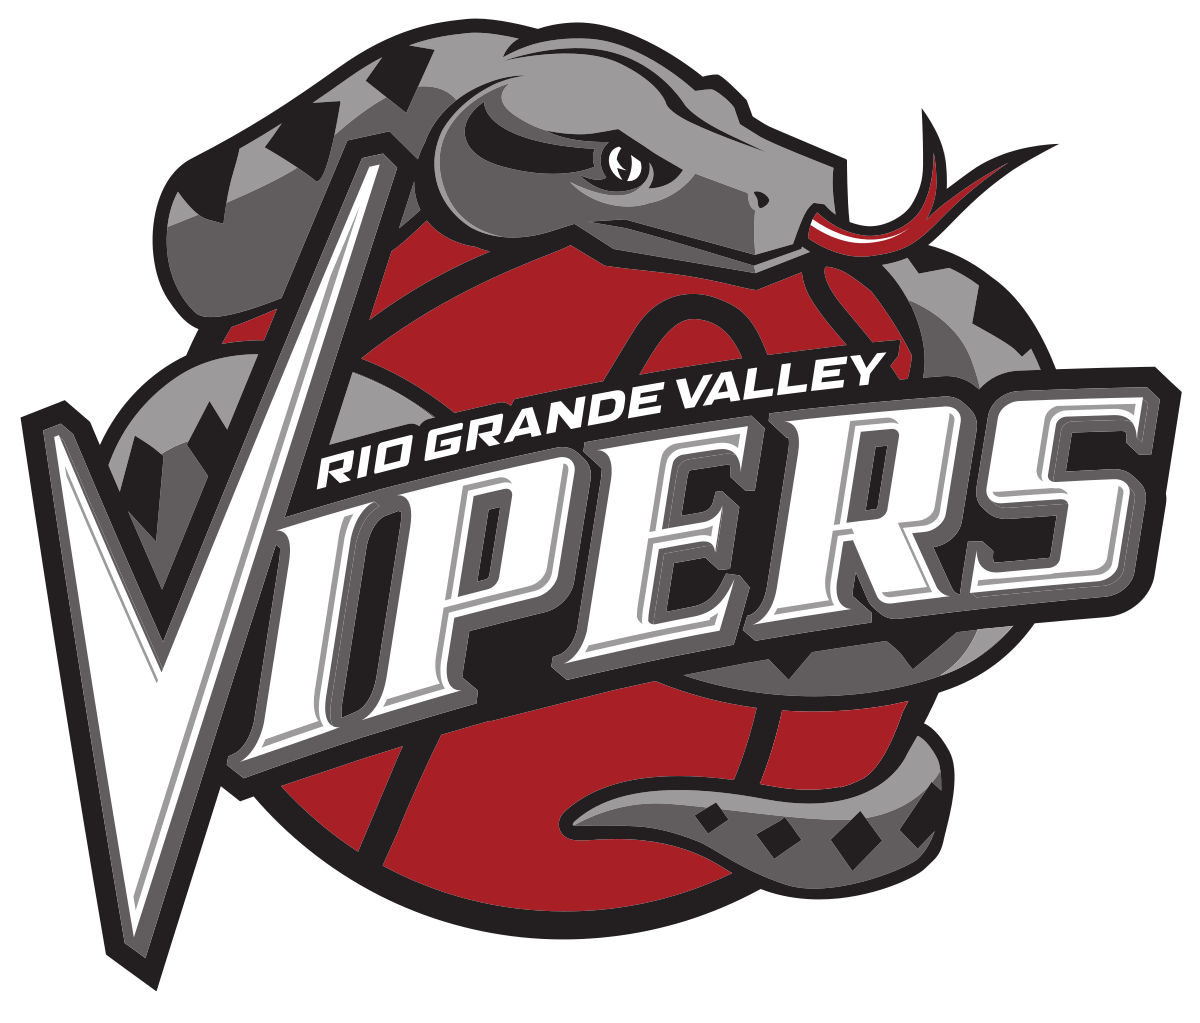 New Viper Logo - Rio Grande Valley Vipers